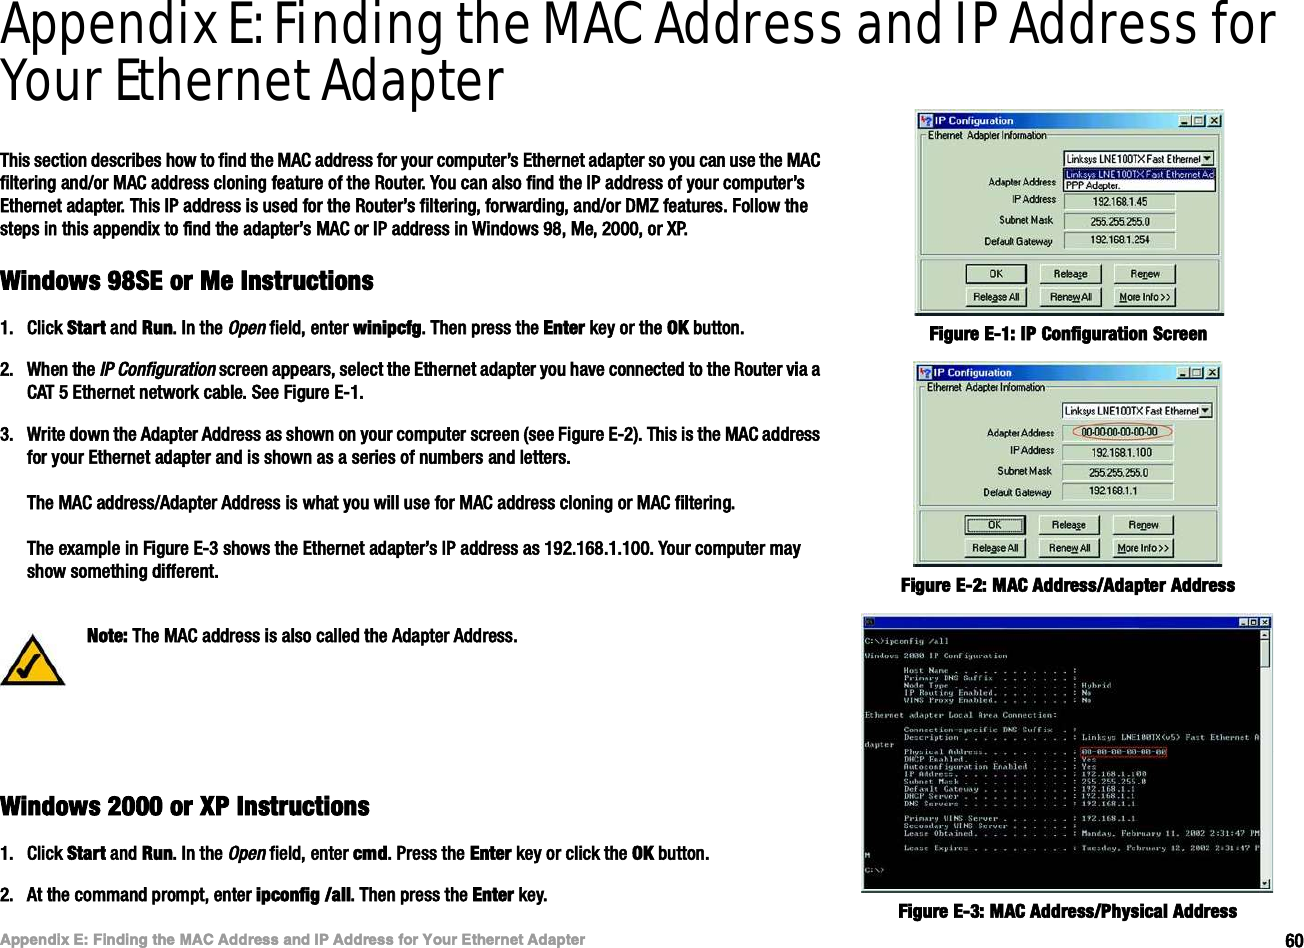 êðß°°»²¼·¨ Ûæ Ú·²¼·²¹ ¬¸» ÓßÝ ß¼¼®»-- ¿²¼ ×Ð ß¼¼®»-- º±® Ç±«® Û¬¸»®²»¬ ß¼¿°¬»®É·²¼±©- çèÍÛ ±® Ó» ×²-¬®«½¬·±²-É·®»´»--óÙ Þ®±¿¼¾¿²¼ Î±«¬»®Appendix E: Finding the MAC Address and IP Address for Your Ethernet AdapterÌ¸·- -»½¬·±² ¼»-½®·¾»- ¸±© ¬± º·²¼ ¬¸» ÓßÝ ¿¼¼®»-- º±® §±«® ½±³°«¬»®Ž- Û¬¸»®²»¬ ¿¼¿°¬»® -± §±« ½¿² «-» ¬¸» ÓßÝ º·´¬»®·²¹ ¿²¼ñ±® ÓßÝ ¿¼¼®»-- ½´±²·²¹ º»¿¬«®» ±º ¬¸» Î±«¬»®ò Ç±« ½¿² ¿´-± º·²¼ ¬¸» ×Ð ¿¼¼®»-- ±º §±«® ½±³°«¬»®Ž- Û¬¸»®²»¬ ¿¼¿°¬»®ò Ì¸·- ×Ð ¿¼¼®»-- ·- «-»¼ º±® ¬¸» Î±«¬»®Ž- º·´¬»®·²¹ô º±®©¿®¼·²¹ô ¿²¼ñ±® ÜÓÆ º»¿¬«®»-ò Ú±´´±© ¬¸» -¬»°- ·² ¬¸·- ¿°°»²¼·¨ ¬± º·²¼ ¬¸» ¿¼¿°¬»®Ž- ÓßÝ ±® ×Ð ¿¼¼®»-- ·² É·²¼±©- çèô Ó»ô îðððô ±® ÈÐòÉ·²¼±©- çèÍÛ ±® Ó» ×²-¬®«½¬·±²-ïòÝ´·½µ Í¬¿®¬ ¿²¼ Î«²ò ×² ¬¸» Ñ°»² º·»´¼ô »²¬»® ©·²·°½º¹ò Ì¸»² °®»-- ¬¸» Û²¬»® µ»§ ±® ¬¸» ÑÕ ¾«¬¬±²ò îòÉ¸»² ¬¸» ×Ð Ý±²º·¹«®¿¬·±² -½®»»² ¿°°»¿®-ô -»´»½¬ ¬¸» Û¬¸»®²»¬ ¿¼¿°¬»® §±« ¸¿ª» ½±²²»½¬»¼ ¬± ¬¸» Î±«¬»® ª·¿ ¿ ÝßÌ ë Û¬¸»®²»¬ ²»¬©±®µ ½¿¾´»ò Í»» Ú·¹«®» ÛóïòíòÉ®·¬» ¼±©² ¬¸» ß¼¿°¬»® ß¼¼®»-- ¿- -¸±©² ±² §±«® ½±³°«¬»® -½®»»² ø-»» Ú·¹«®» Ûóî÷ò Ì¸·- ·- ¬¸» ÓßÝ ¿¼¼®»-- º±® §±«® Û¬¸»®²»¬ ¿¼¿°¬»® ¿²¼ ·- -¸±©² ¿- ¿ -»®·»- ±º ²«³¾»®- ¿²¼ ´»¬¬»®-òÌ¸» ÓßÝ ¿¼¼®»--ñß¼¿°¬»® ß¼¼®»-- ·- ©¸¿¬ §±« ©·´´ «-» º±® ÓßÝ ¿¼¼®»-- ½´±²·²¹ ±® ÓßÝ º·´¬»®·²¹òÌ¸» »¨¿³°´» ·² Ú·¹«®» Ûóí -¸±©- ¬¸» Û¬¸»®²»¬ ¿¼¿°¬»®Ž- ×Ð ¿¼¼®»-- ¿- ïçîòïêèòïòïððò Ç±«® ½±³°«¬»® ³¿§ -¸±© -±³»¬¸·²¹ ¼·ºº»®»²¬òÉ·²¼±©- îððð ±® ÈÐ ×²-¬®«½¬·±²-ïòÝ´·½µ Í¬¿®¬ ¿²¼ Î«²ò ×² ¬¸» Ñ°»² º·»´¼ô »²¬»® ½³¼ò Ð®»-- ¬¸» Û²¬»® µ»§ ±® ½´·½µ ¬¸» ÑÕ ¾«¬¬±²òîòß¬ ¬¸» ½±³³¿²¼ °®±³°¬ô »²¬»® ·°½±²º·¹ ñ¿´´ò Ì¸»² °®»-- ¬¸» Û²¬»® µ»§òÚ·¹«®» Ûóîæ ÓßÝ ß¼¼®»--ñß¼¿°¬»® ß¼¼®»--Ú·¹«®» Ûóïæ ×Ð Ý±²º·¹«®¿¬·±² Í½®»»²Ò±¬»æ Ì¸» ÓßÝ ¿¼¼®»-- ·- ¿´-± ½¿´´»¼ ¬¸» ß¼¿°¬»® ß¼¼®»--òÚ·¹«®» Ûóíæ ÓßÝ ß¼¼®»--ñÐ¸§-·½¿´ ß¼¼®»--